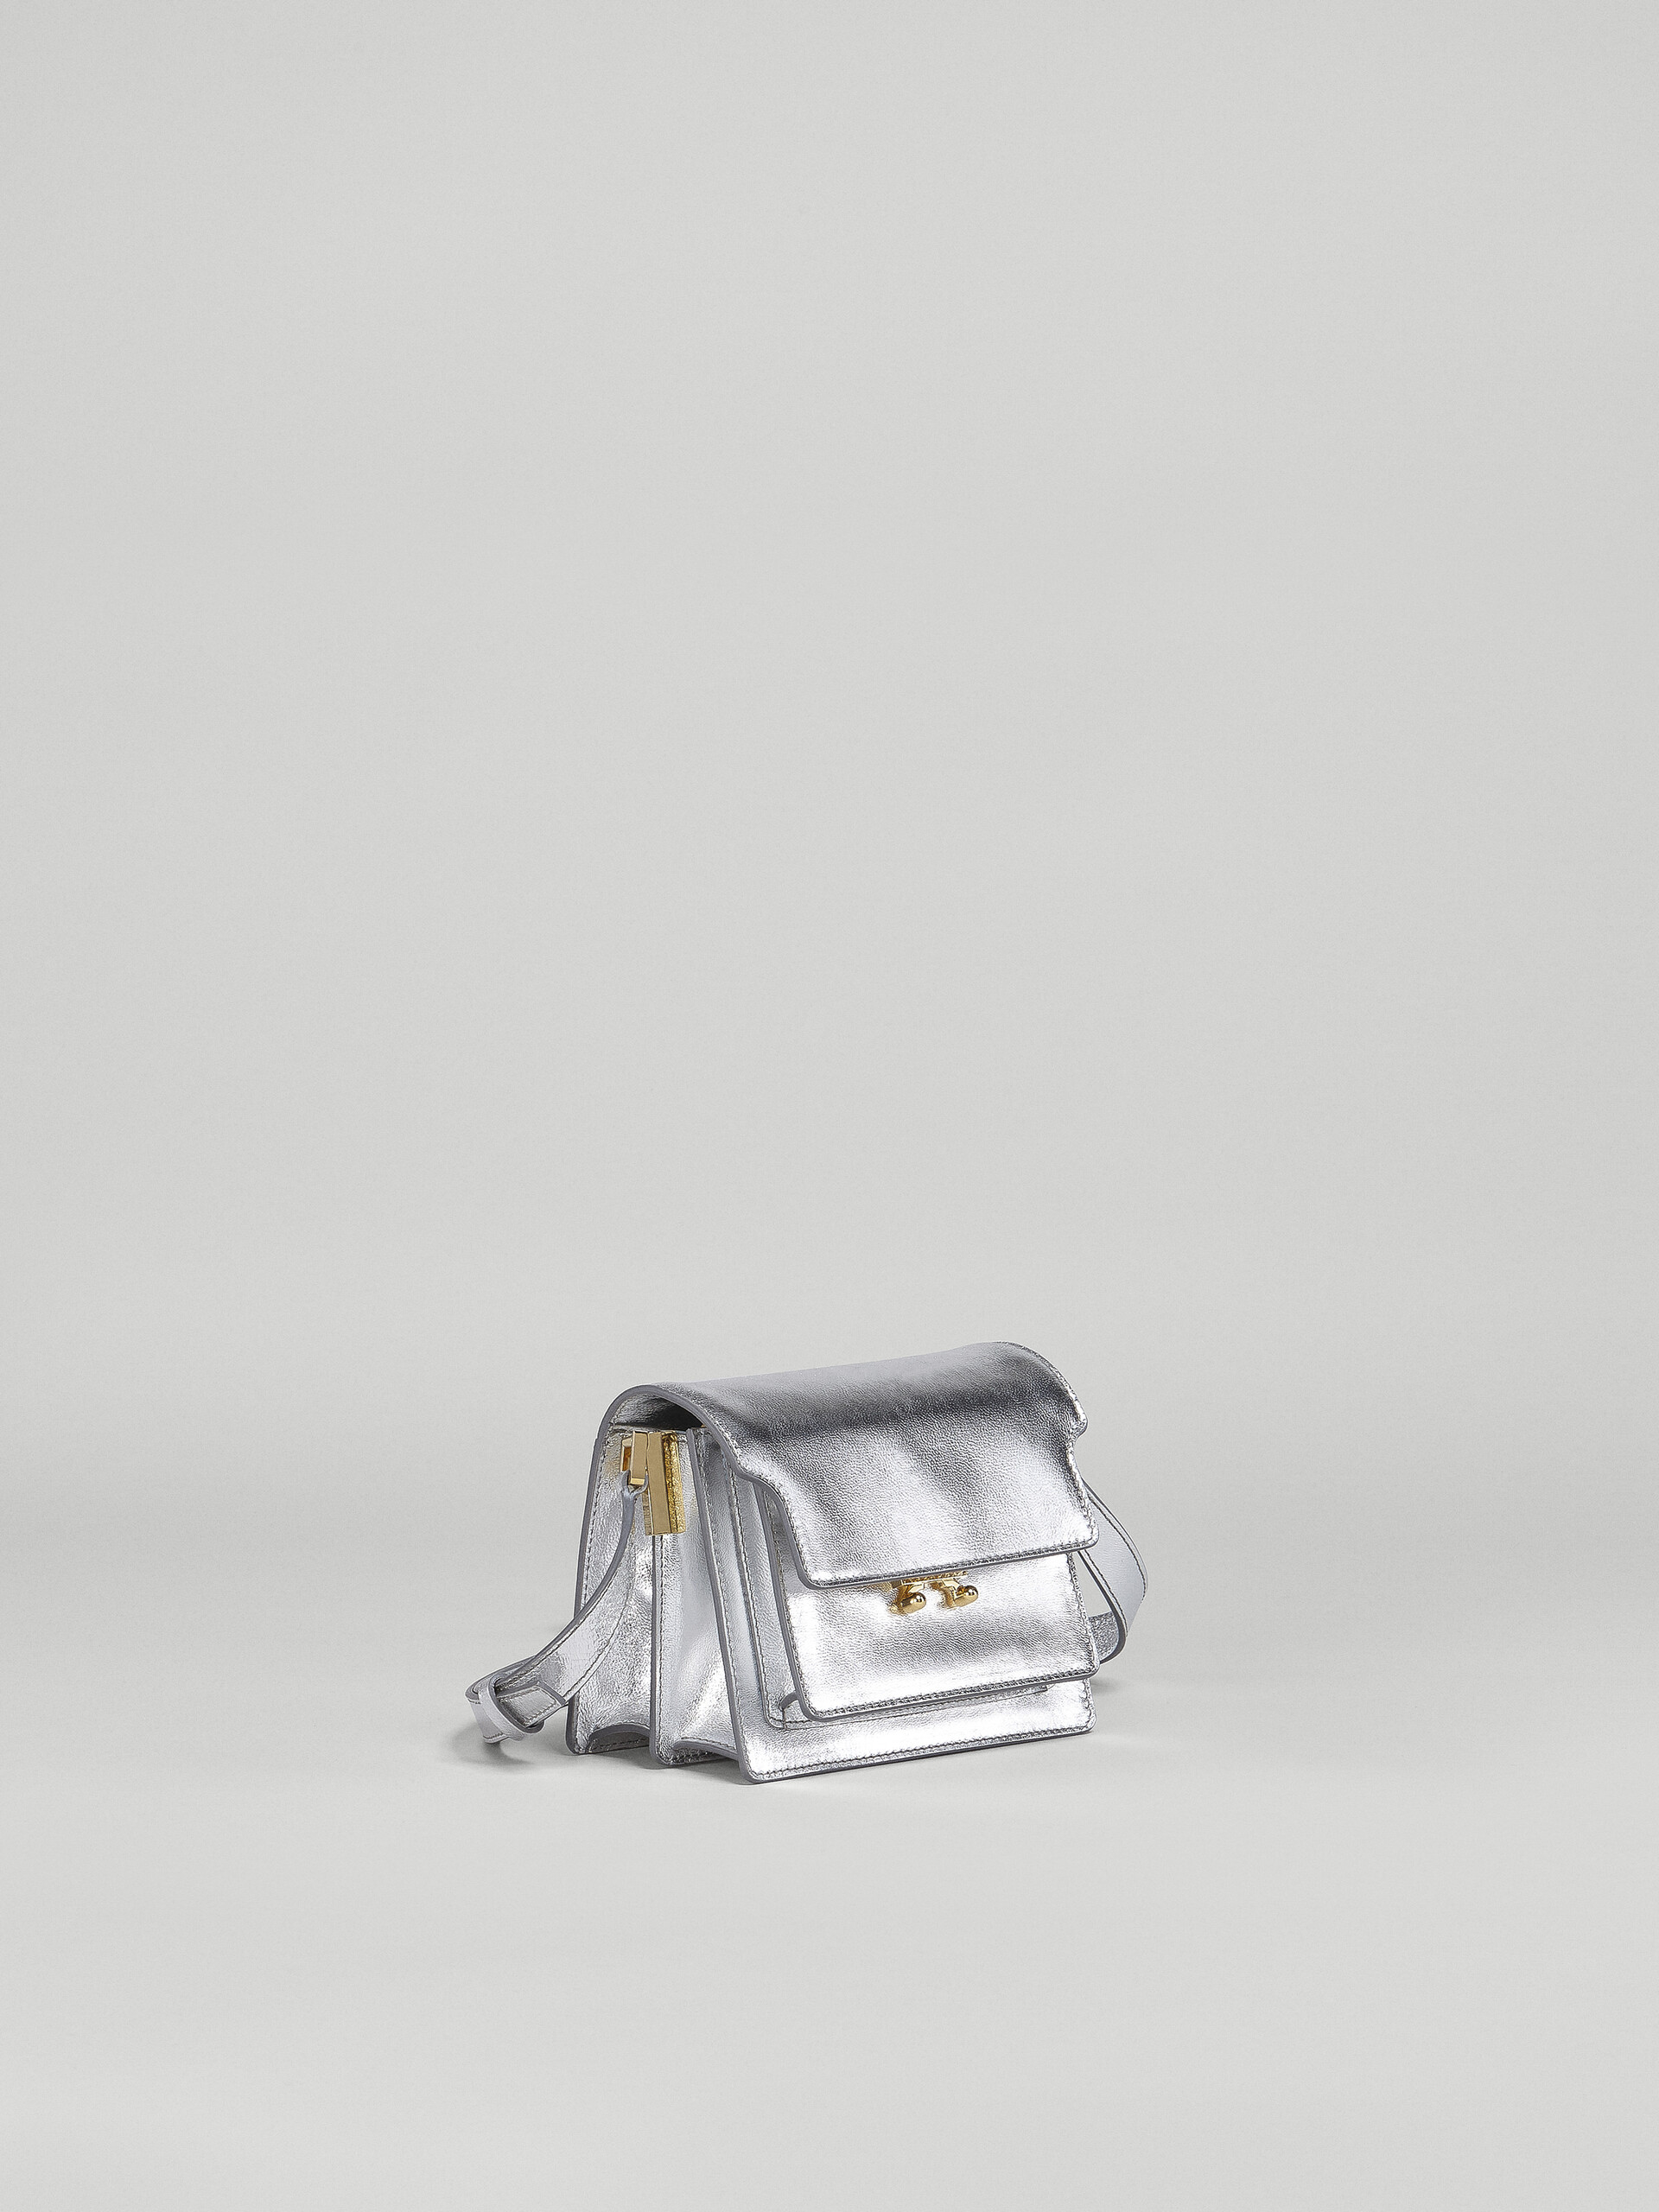 TRUNK SOFT bag in pelle metallizzata argento - Borse a spalla - Image 4